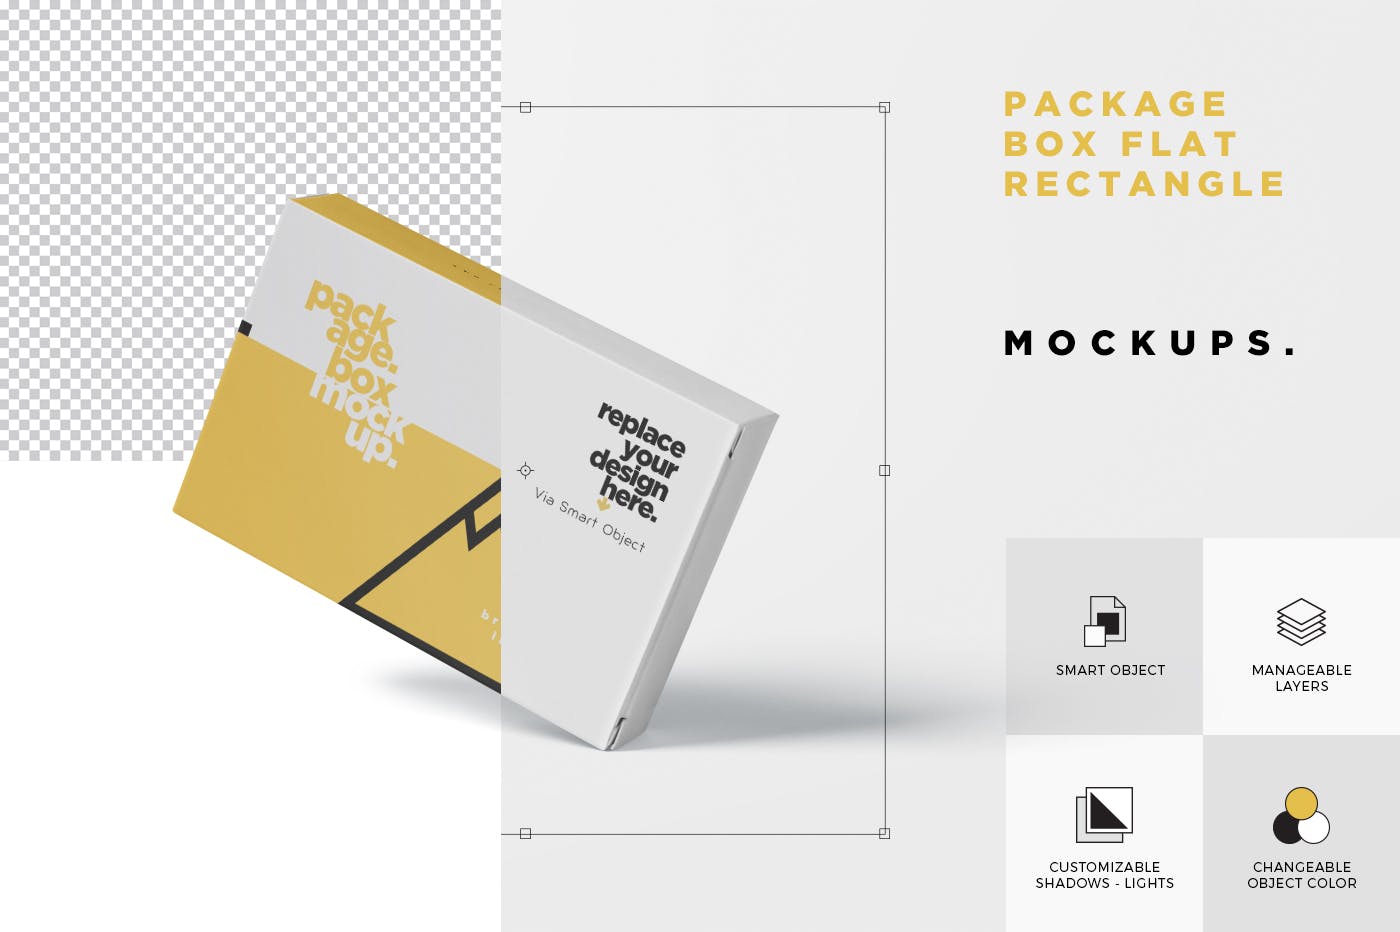 扑克牌大小扁平包装纸盒外观设计素材库精选模板 Package Box Mock-Up – Wide – Flat Rectangle Shape插图(6)